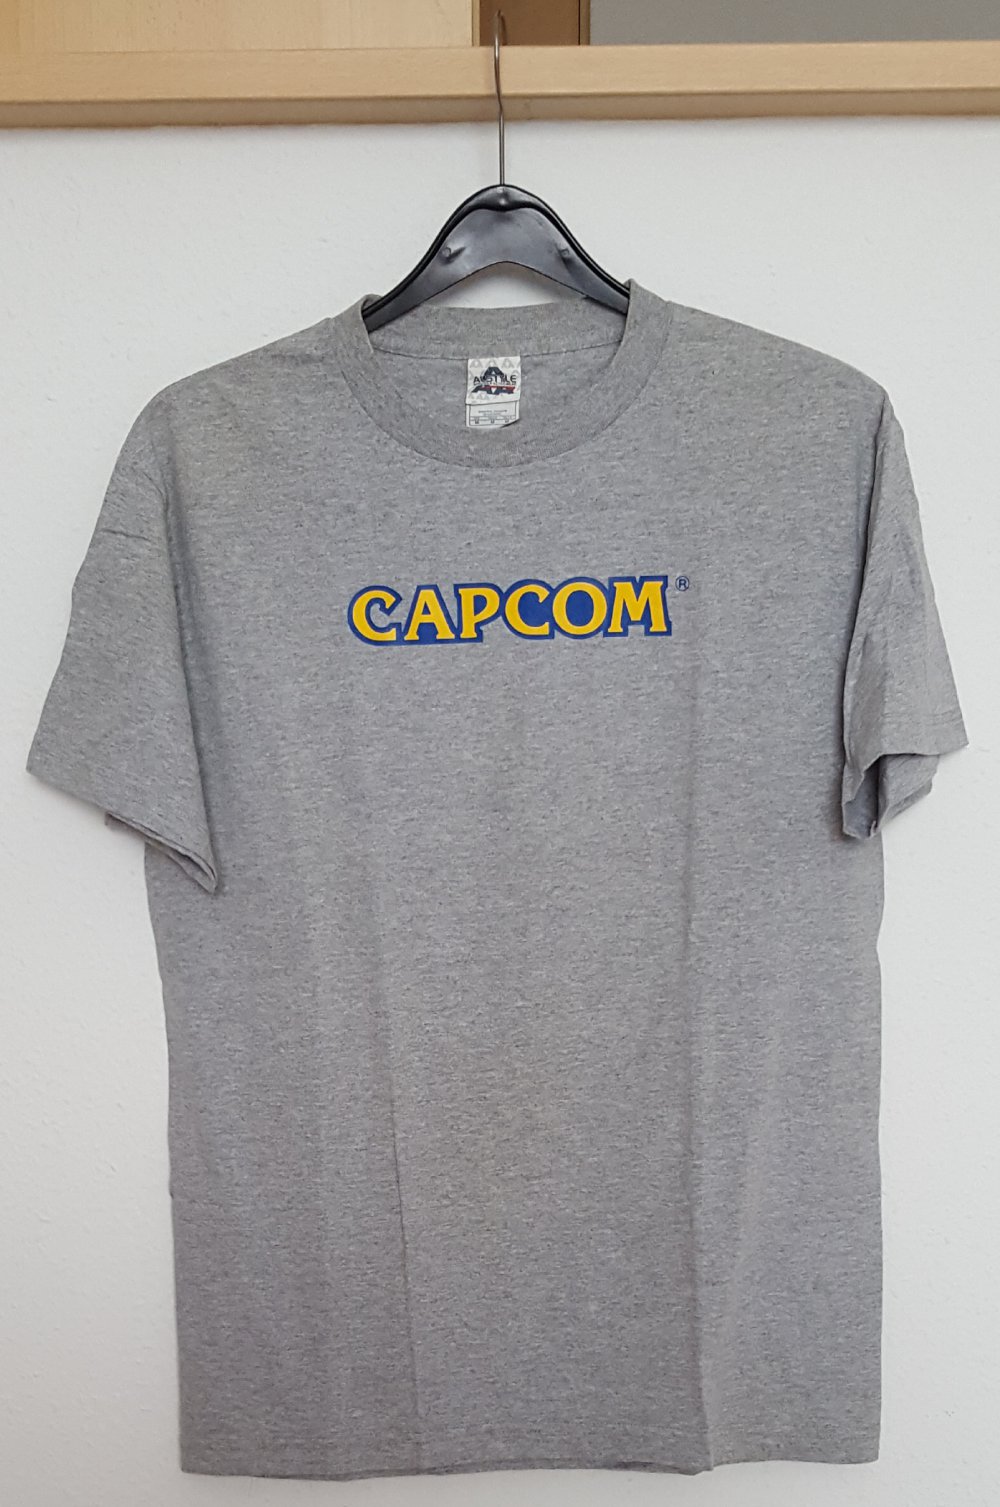 Schönes stylishes T-Shirt Shirt Capcom Street Fighter Alstyle grau Herren Größe M NEU